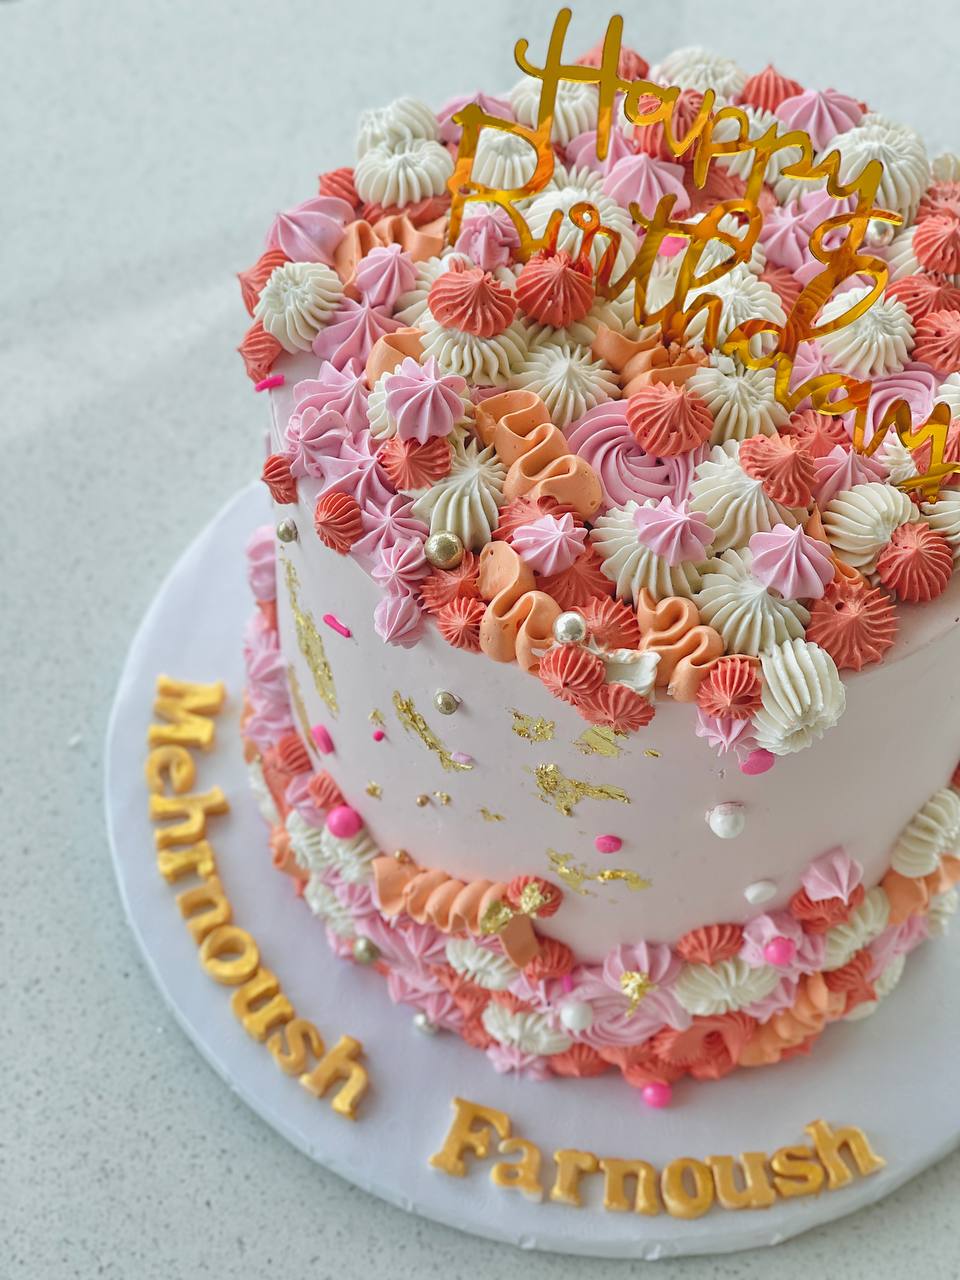 the Blossom cake